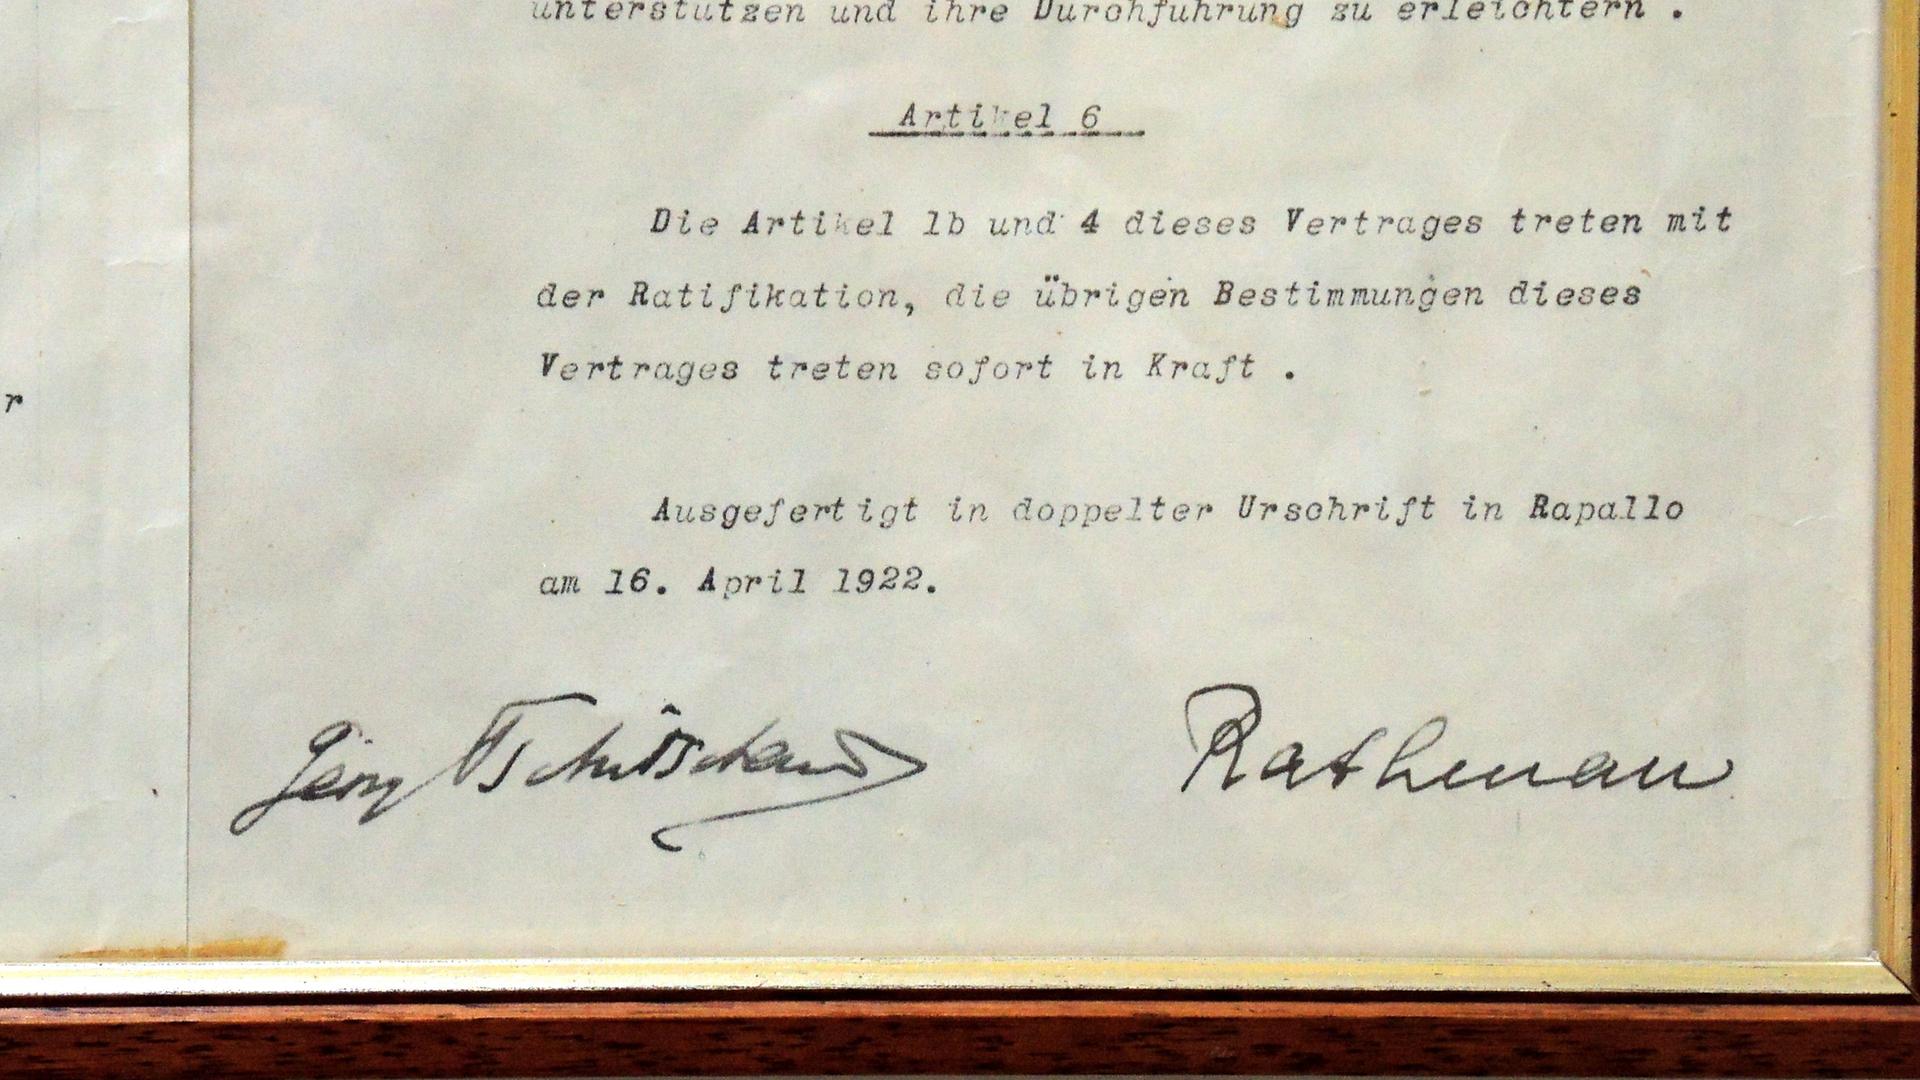 Teilansicht der deutschsprachigen Kopie des "Vertrages von Rapallo", unterzeichnet von dem damaligen deutschen Außenminister Walther Rathenau (.r) und dem sowjetrussichen Außenminister Georgi Tschitscherin (l.). Der deutsch- russische Freundschaftsvertrag wurde am 16. April 1922 im Imperiale Palace Hotel in Santa Margherita bei Rapallo (Italien) unterzeichnet